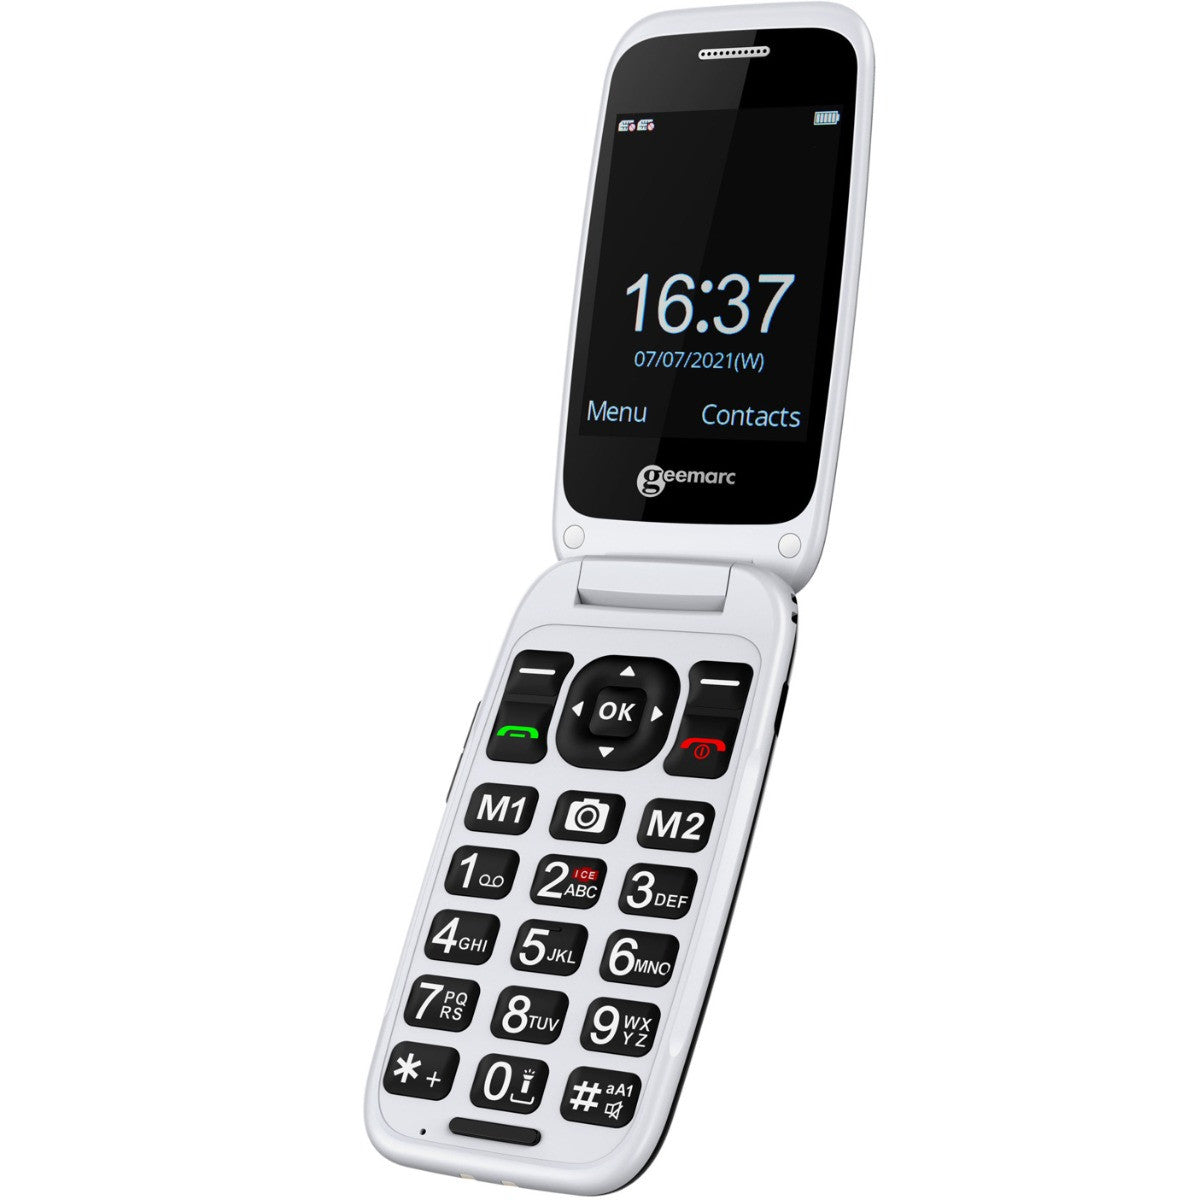 Téléphone à grosses touches Geemarc sans fil duo photo avec répondeur